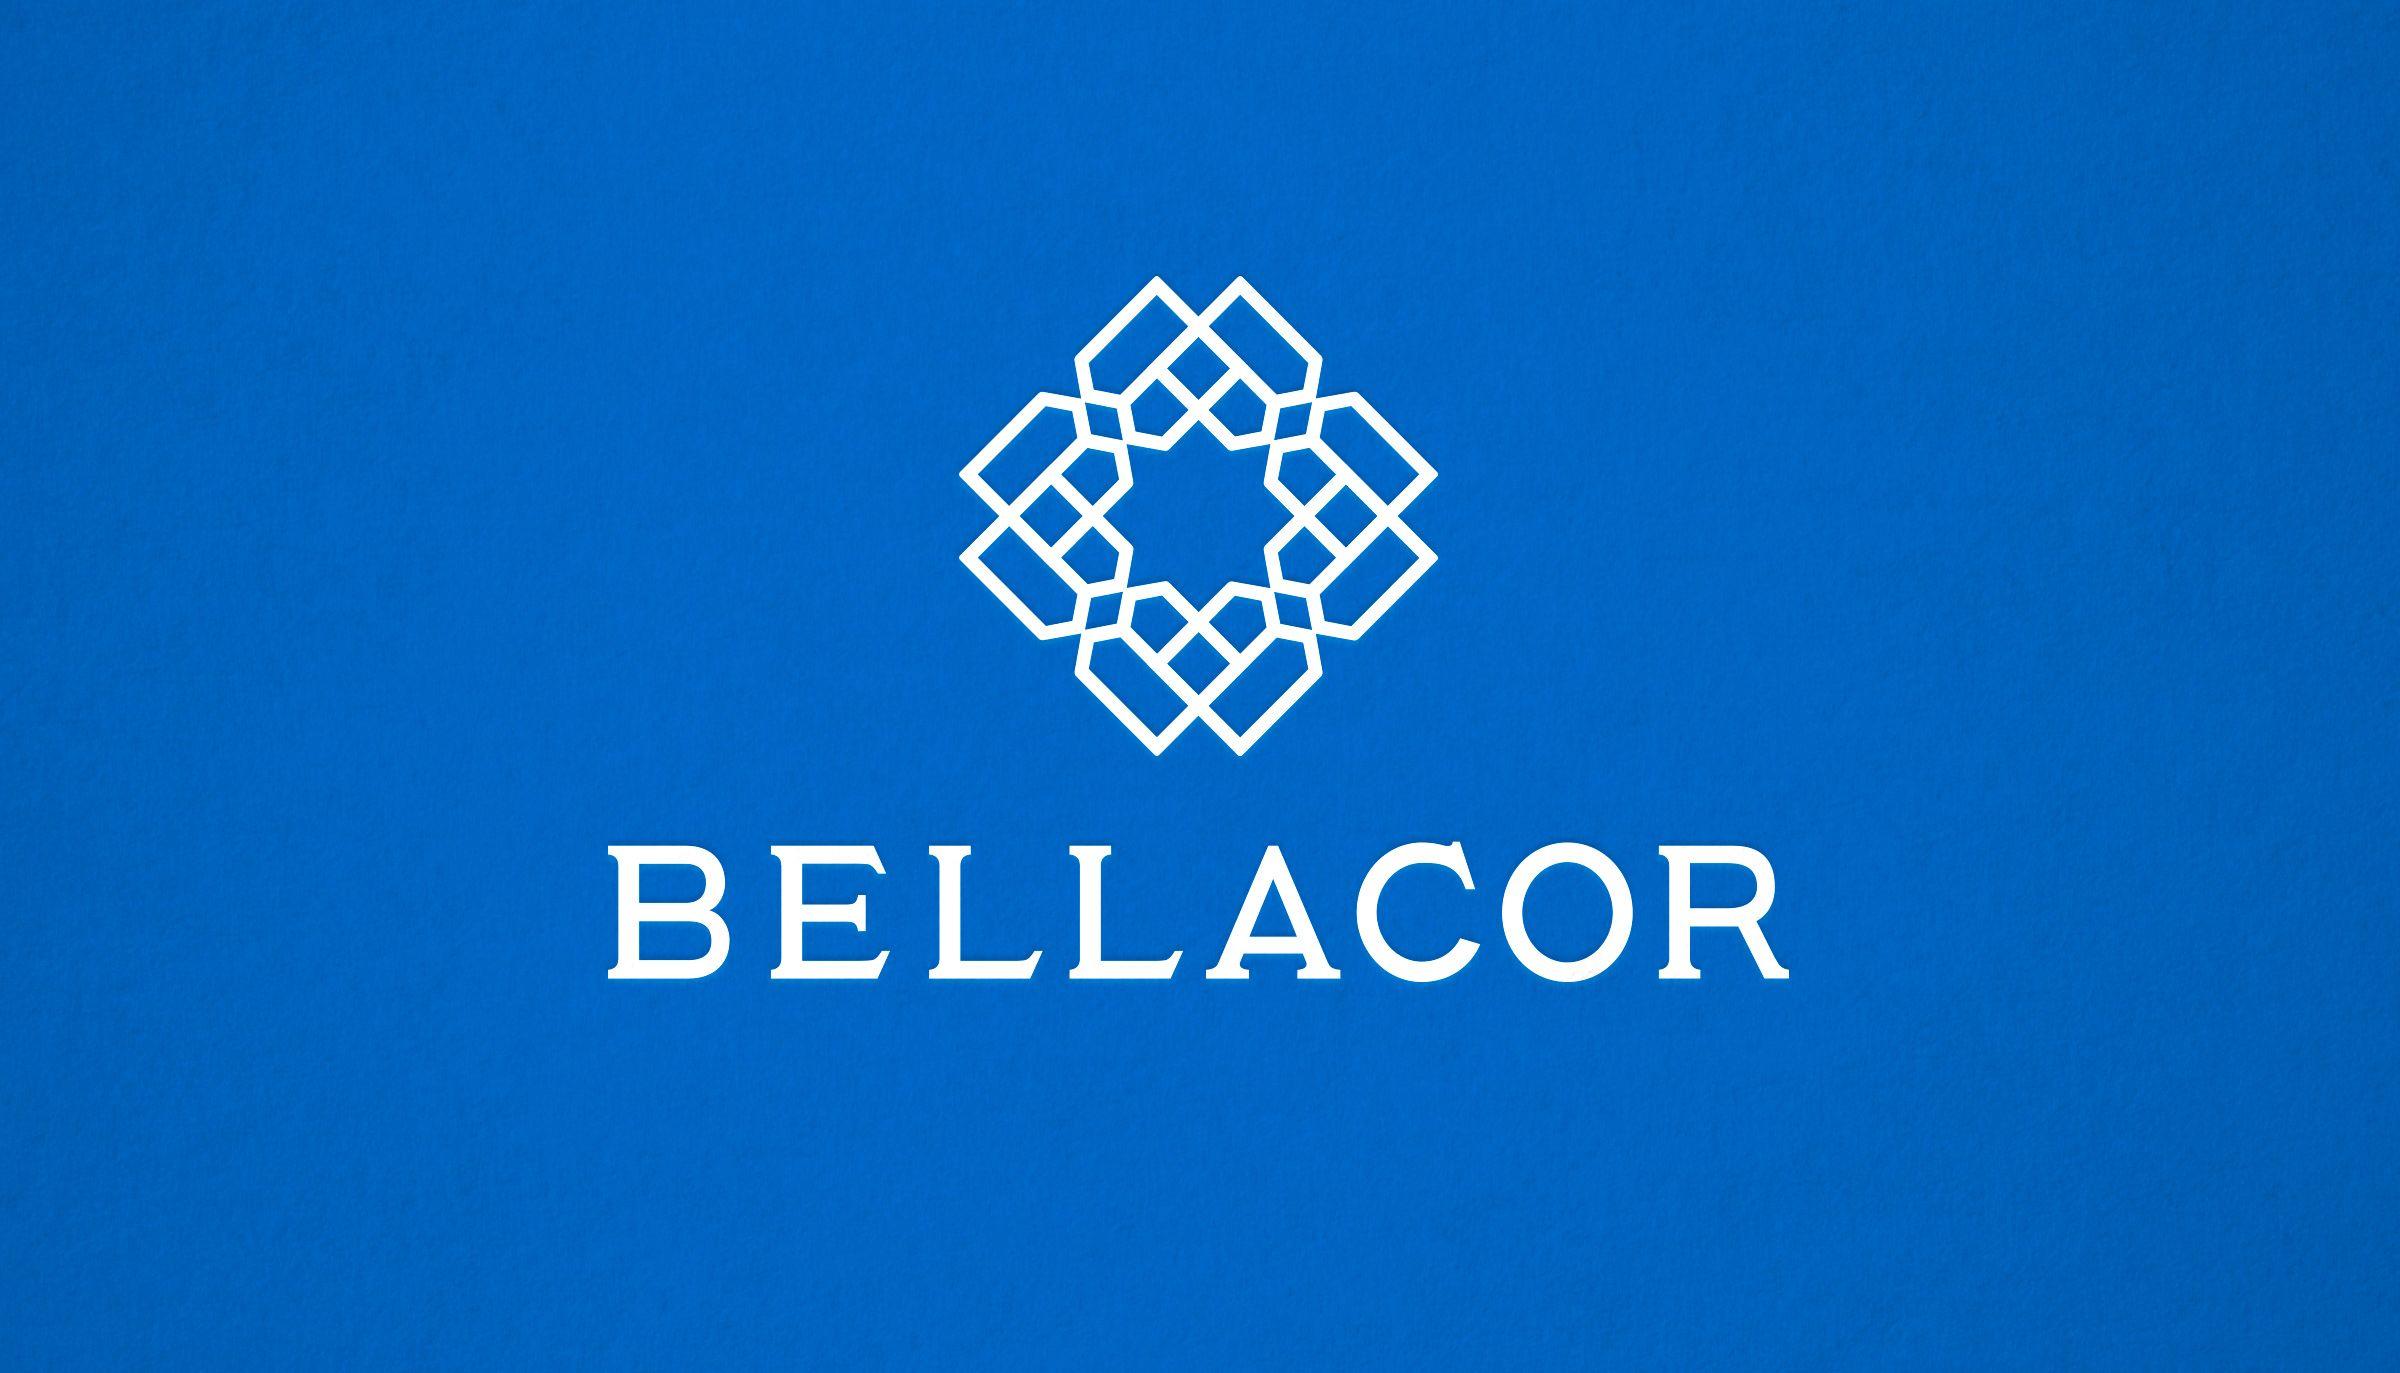 Bellacor Logo - Werner Design Werks